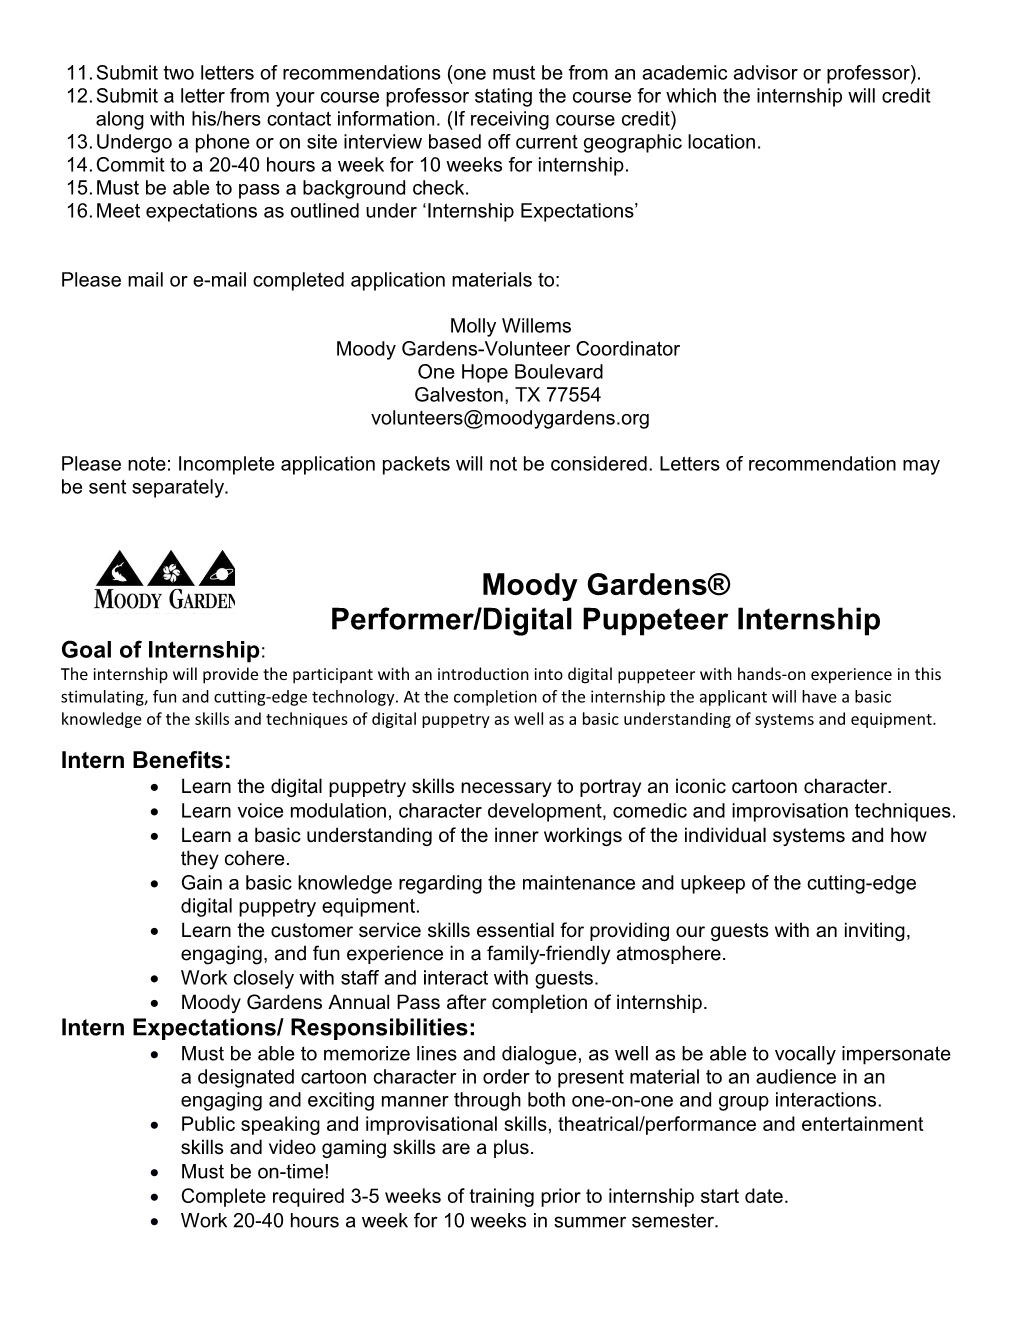 Moody Gardens Performer/Digital Puppeteer Internship Application